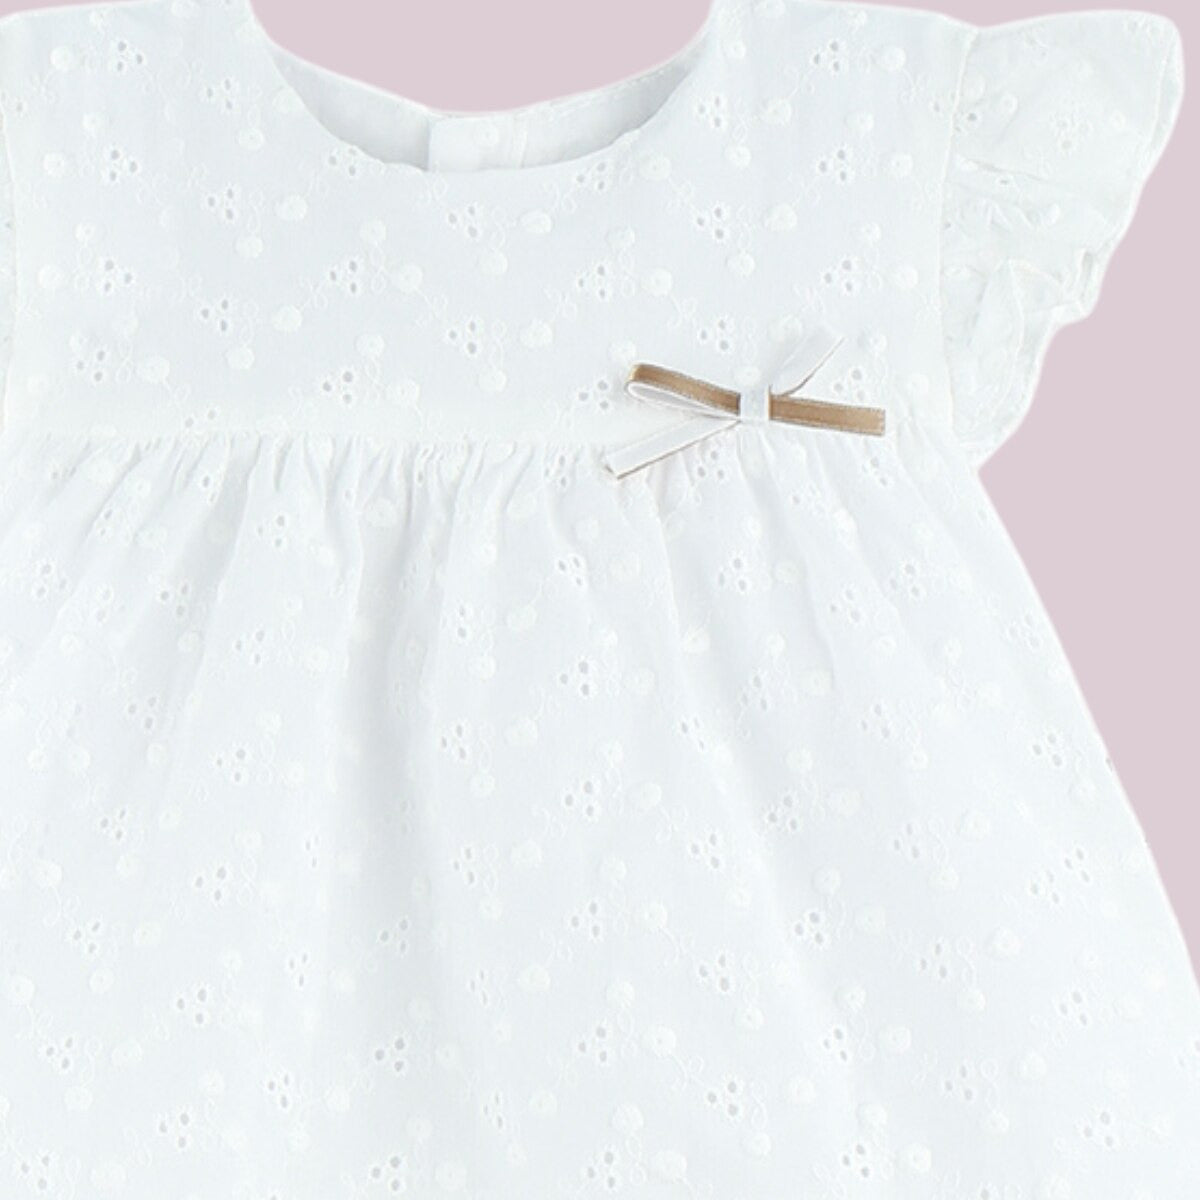 Babyferr White dress set